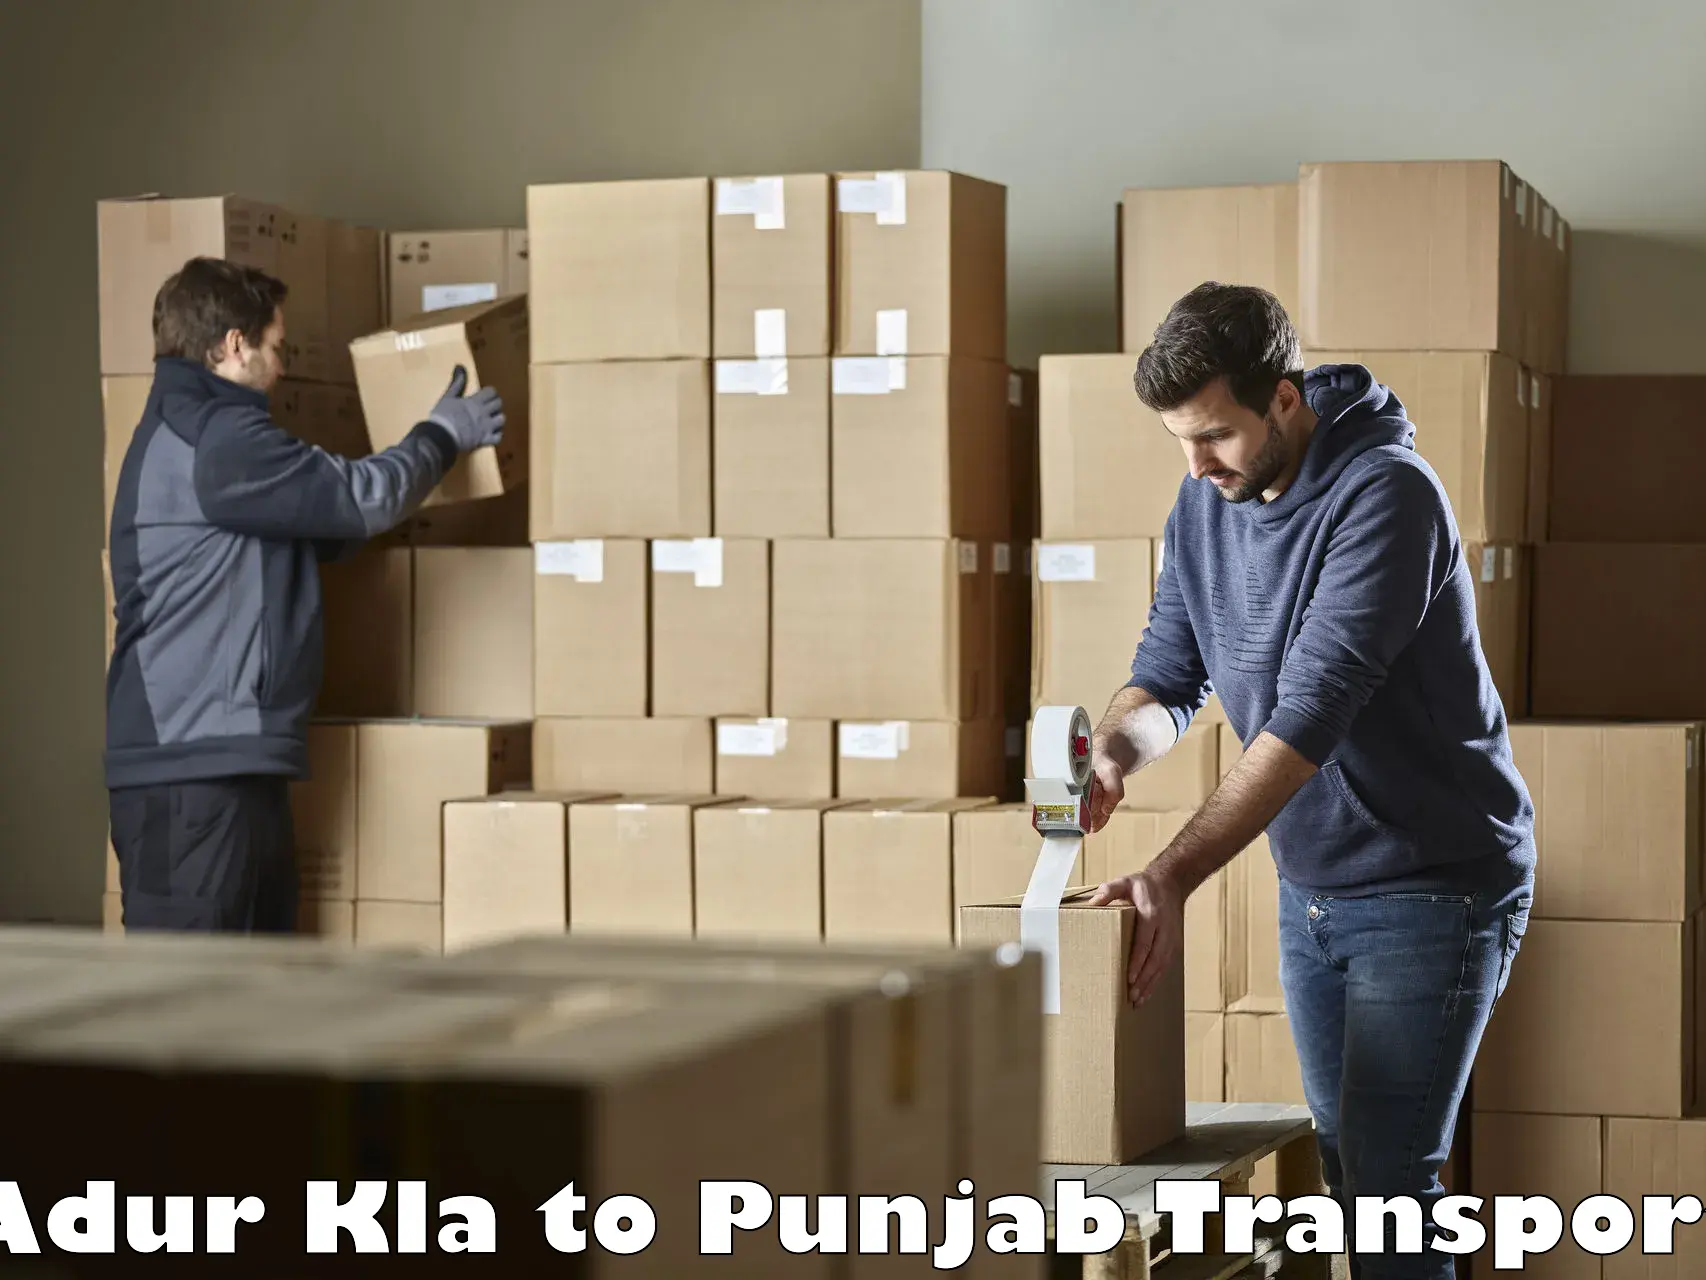 Vehicle parcel service Adur Kla to Moga